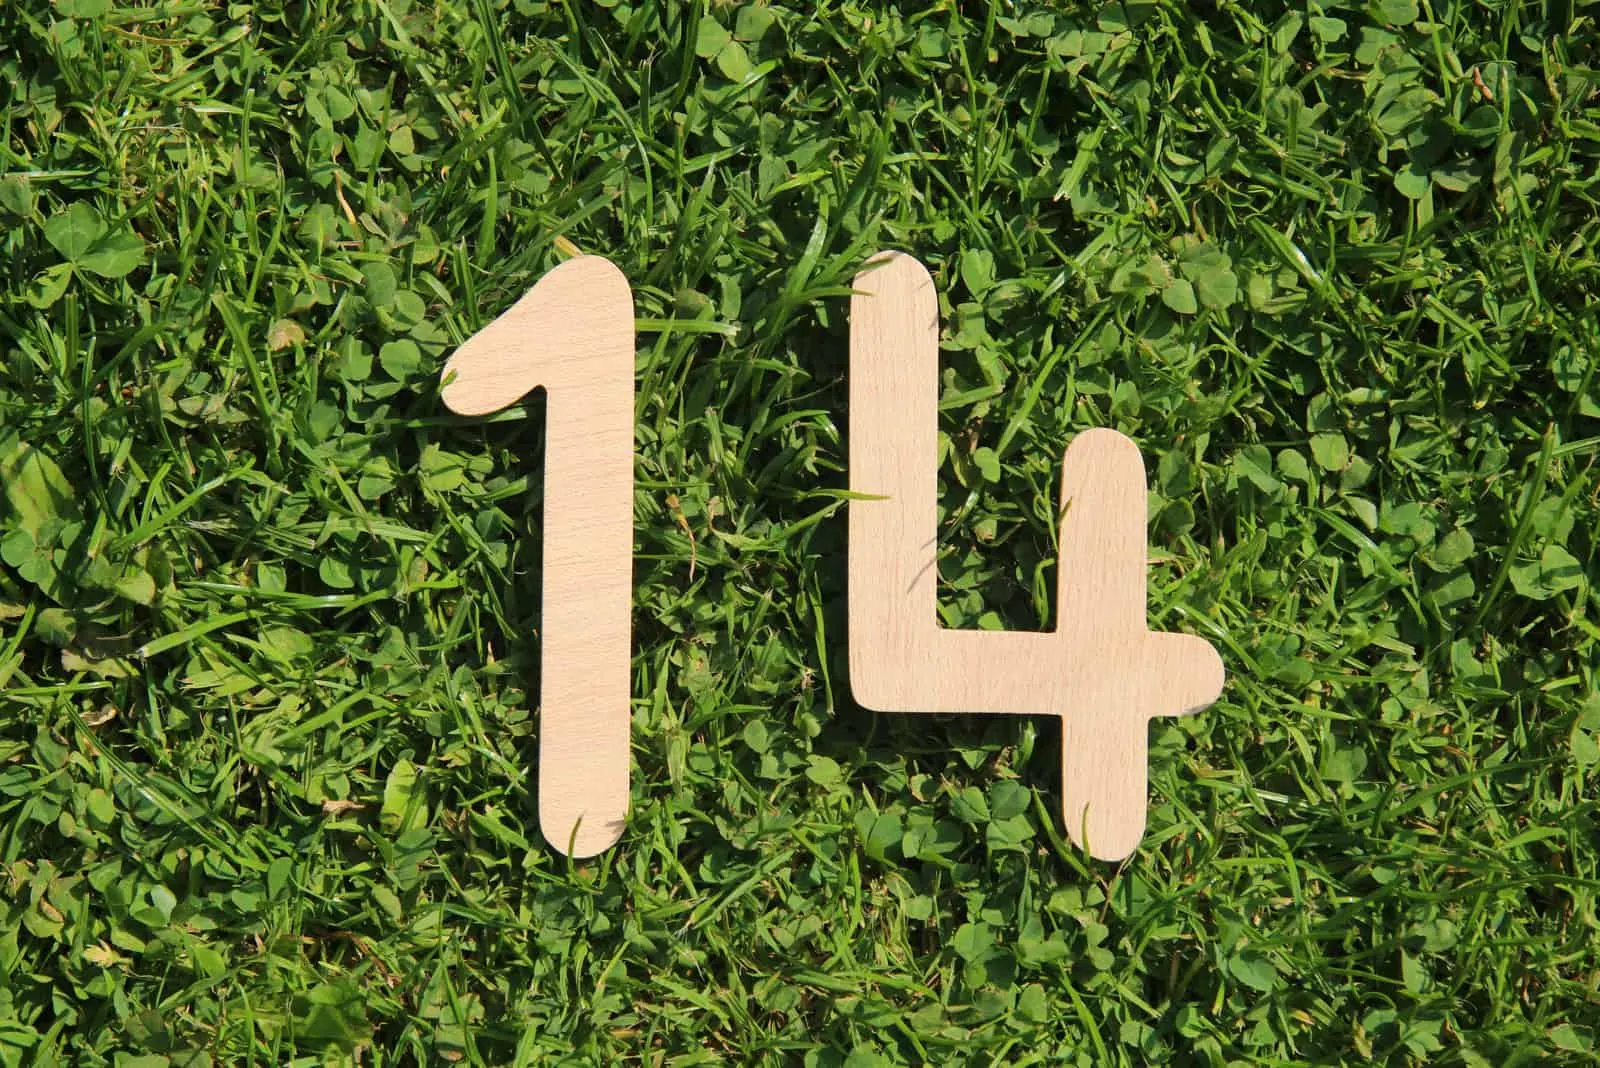 Nummer 14 auf dem Rasen